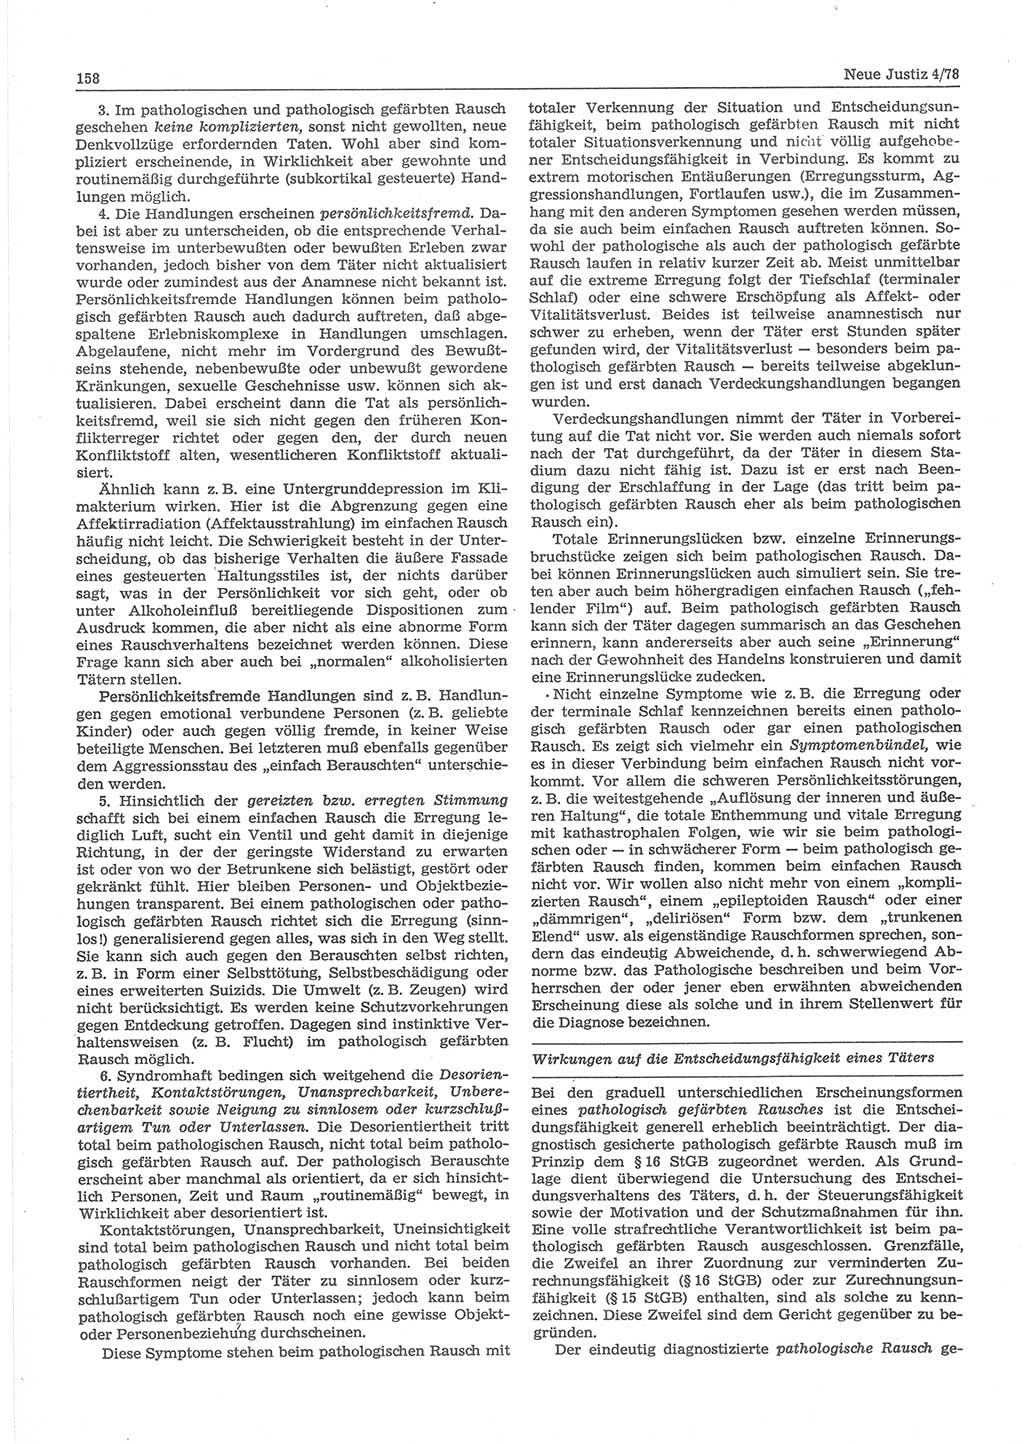 Neue Justiz (NJ), Zeitschrift für sozialistisches Recht und Gesetzlichkeit [Deutsche Demokratische Republik (DDR)], 32. Jahrgang 1978, Seite 158 (NJ DDR 1978, S. 158)